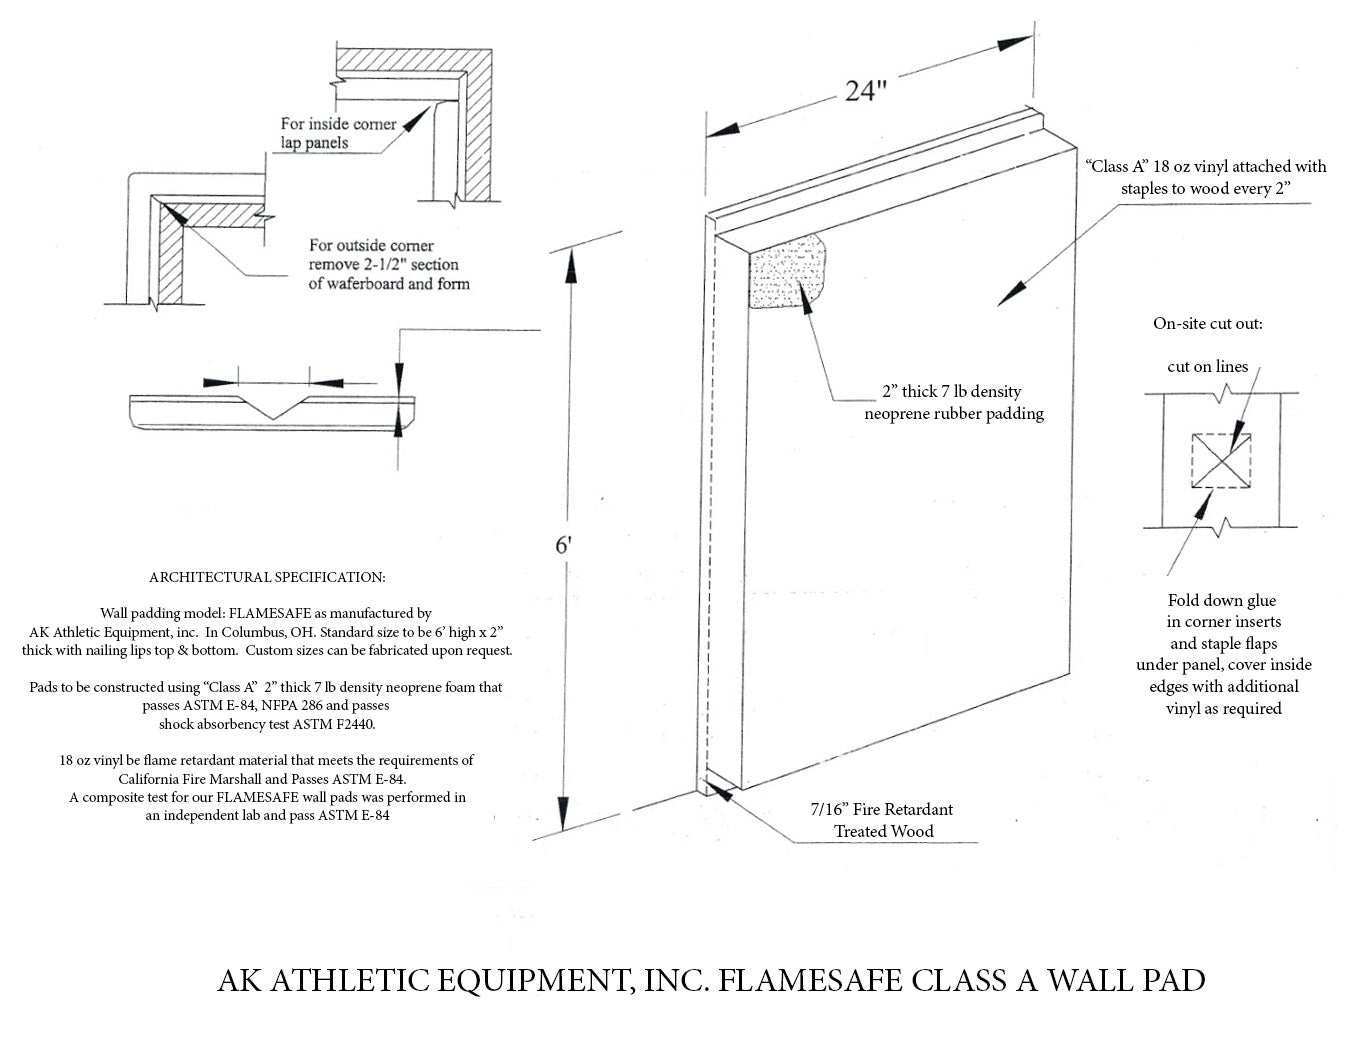 AK Athletics Flame Safe Gym Wall Padding Specs ASTM E-84